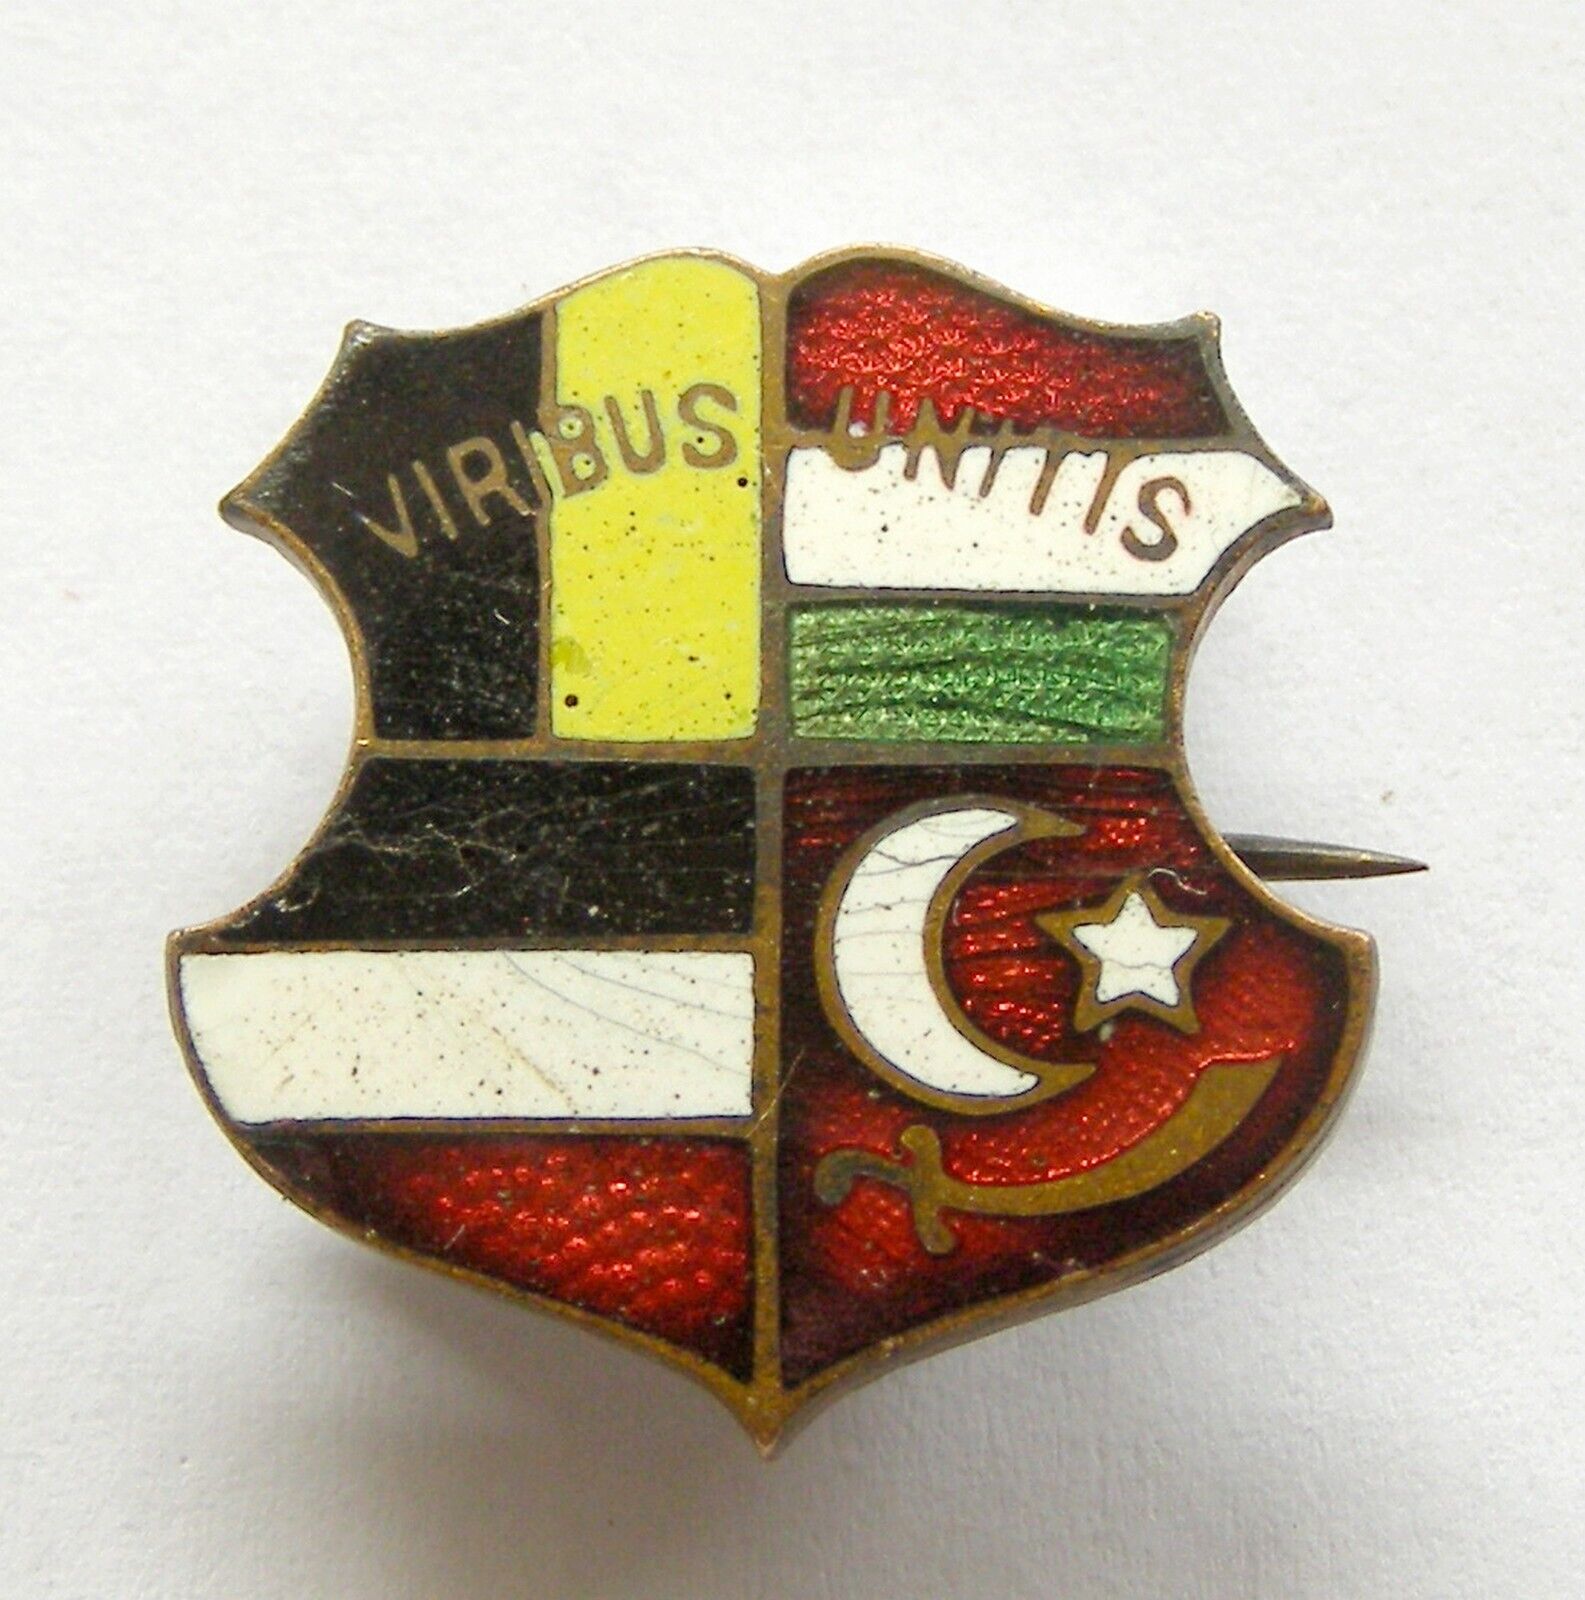 t938 Austria Hungary Germany Turkey Friendship WWI enamel badge VIRIBUS UNITIS